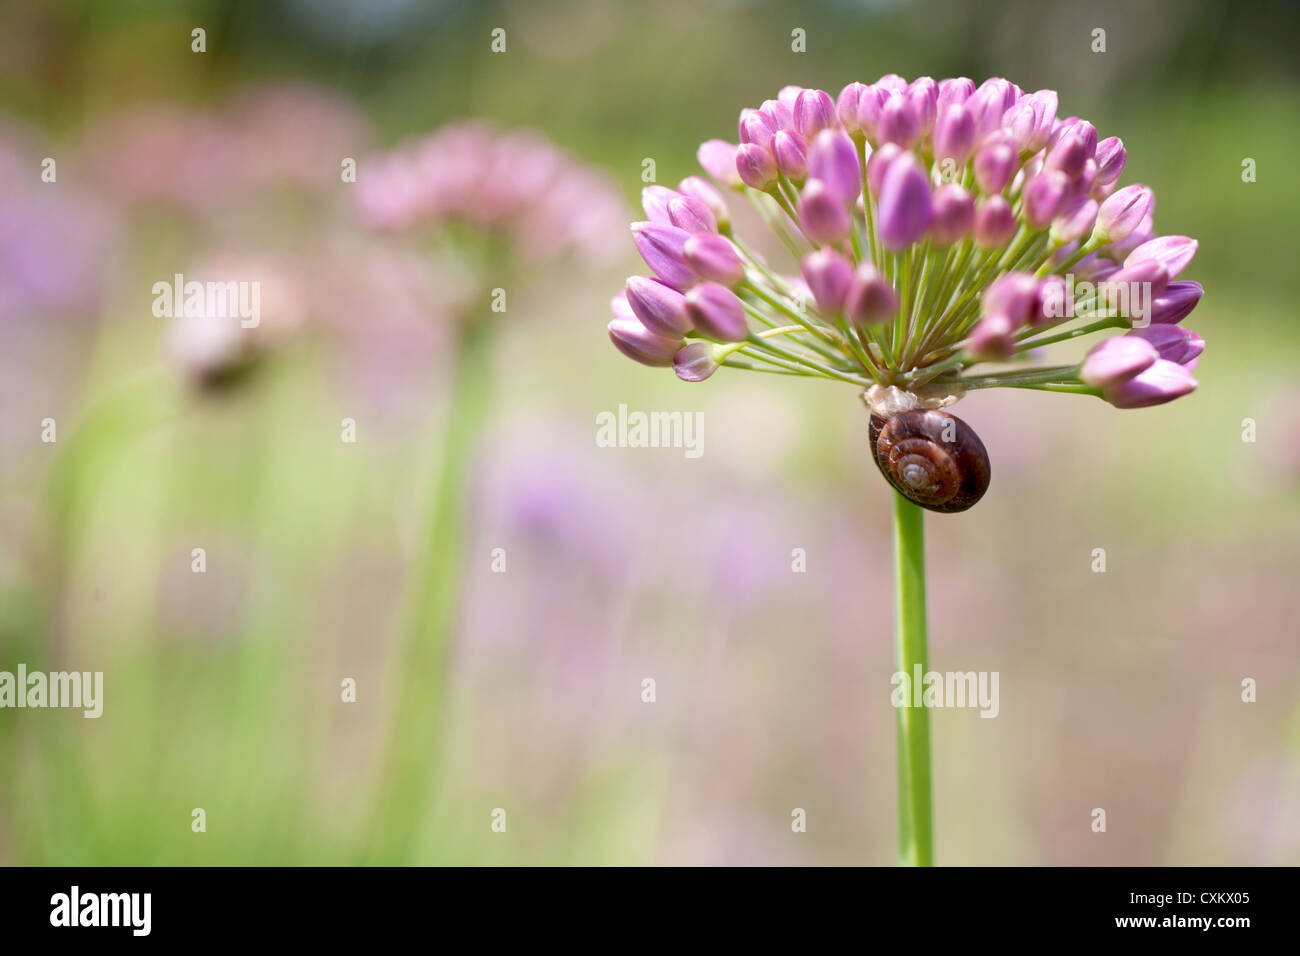 Schnecke auf Allium Blume Stockfoto